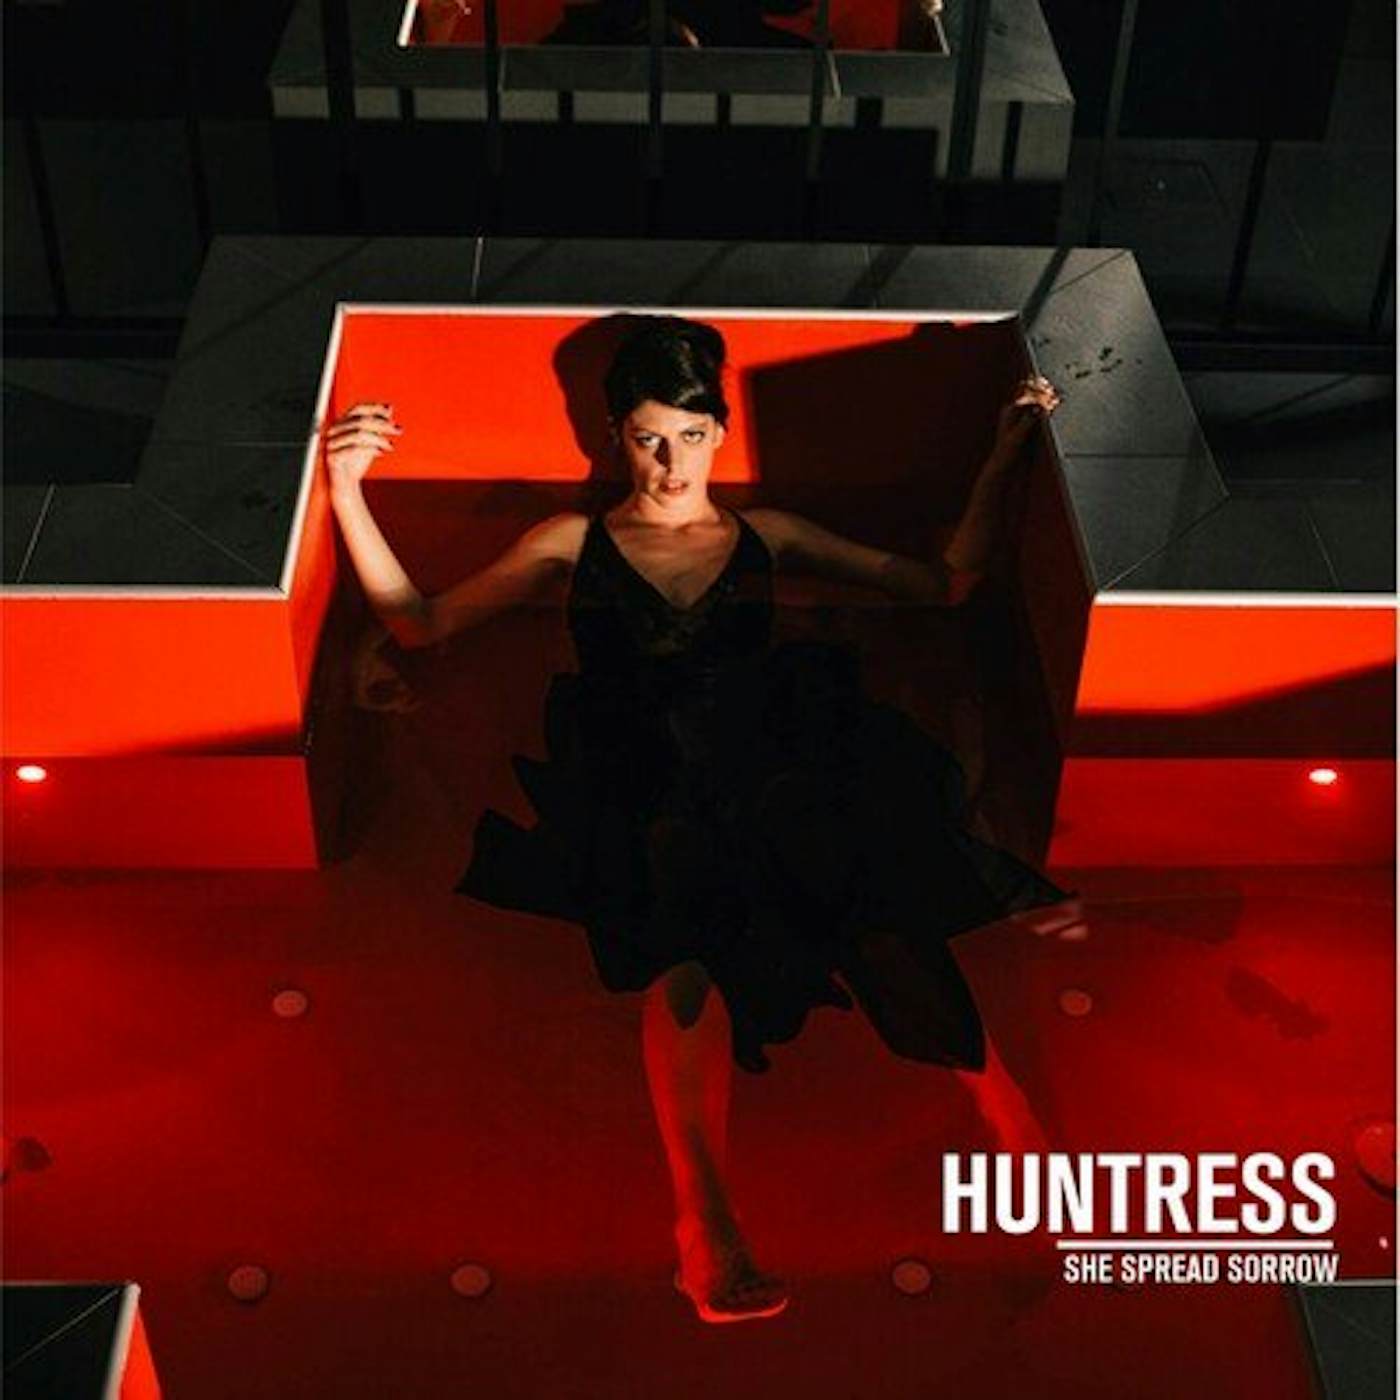 She Spread Sorrow Huntress Vinyl Record